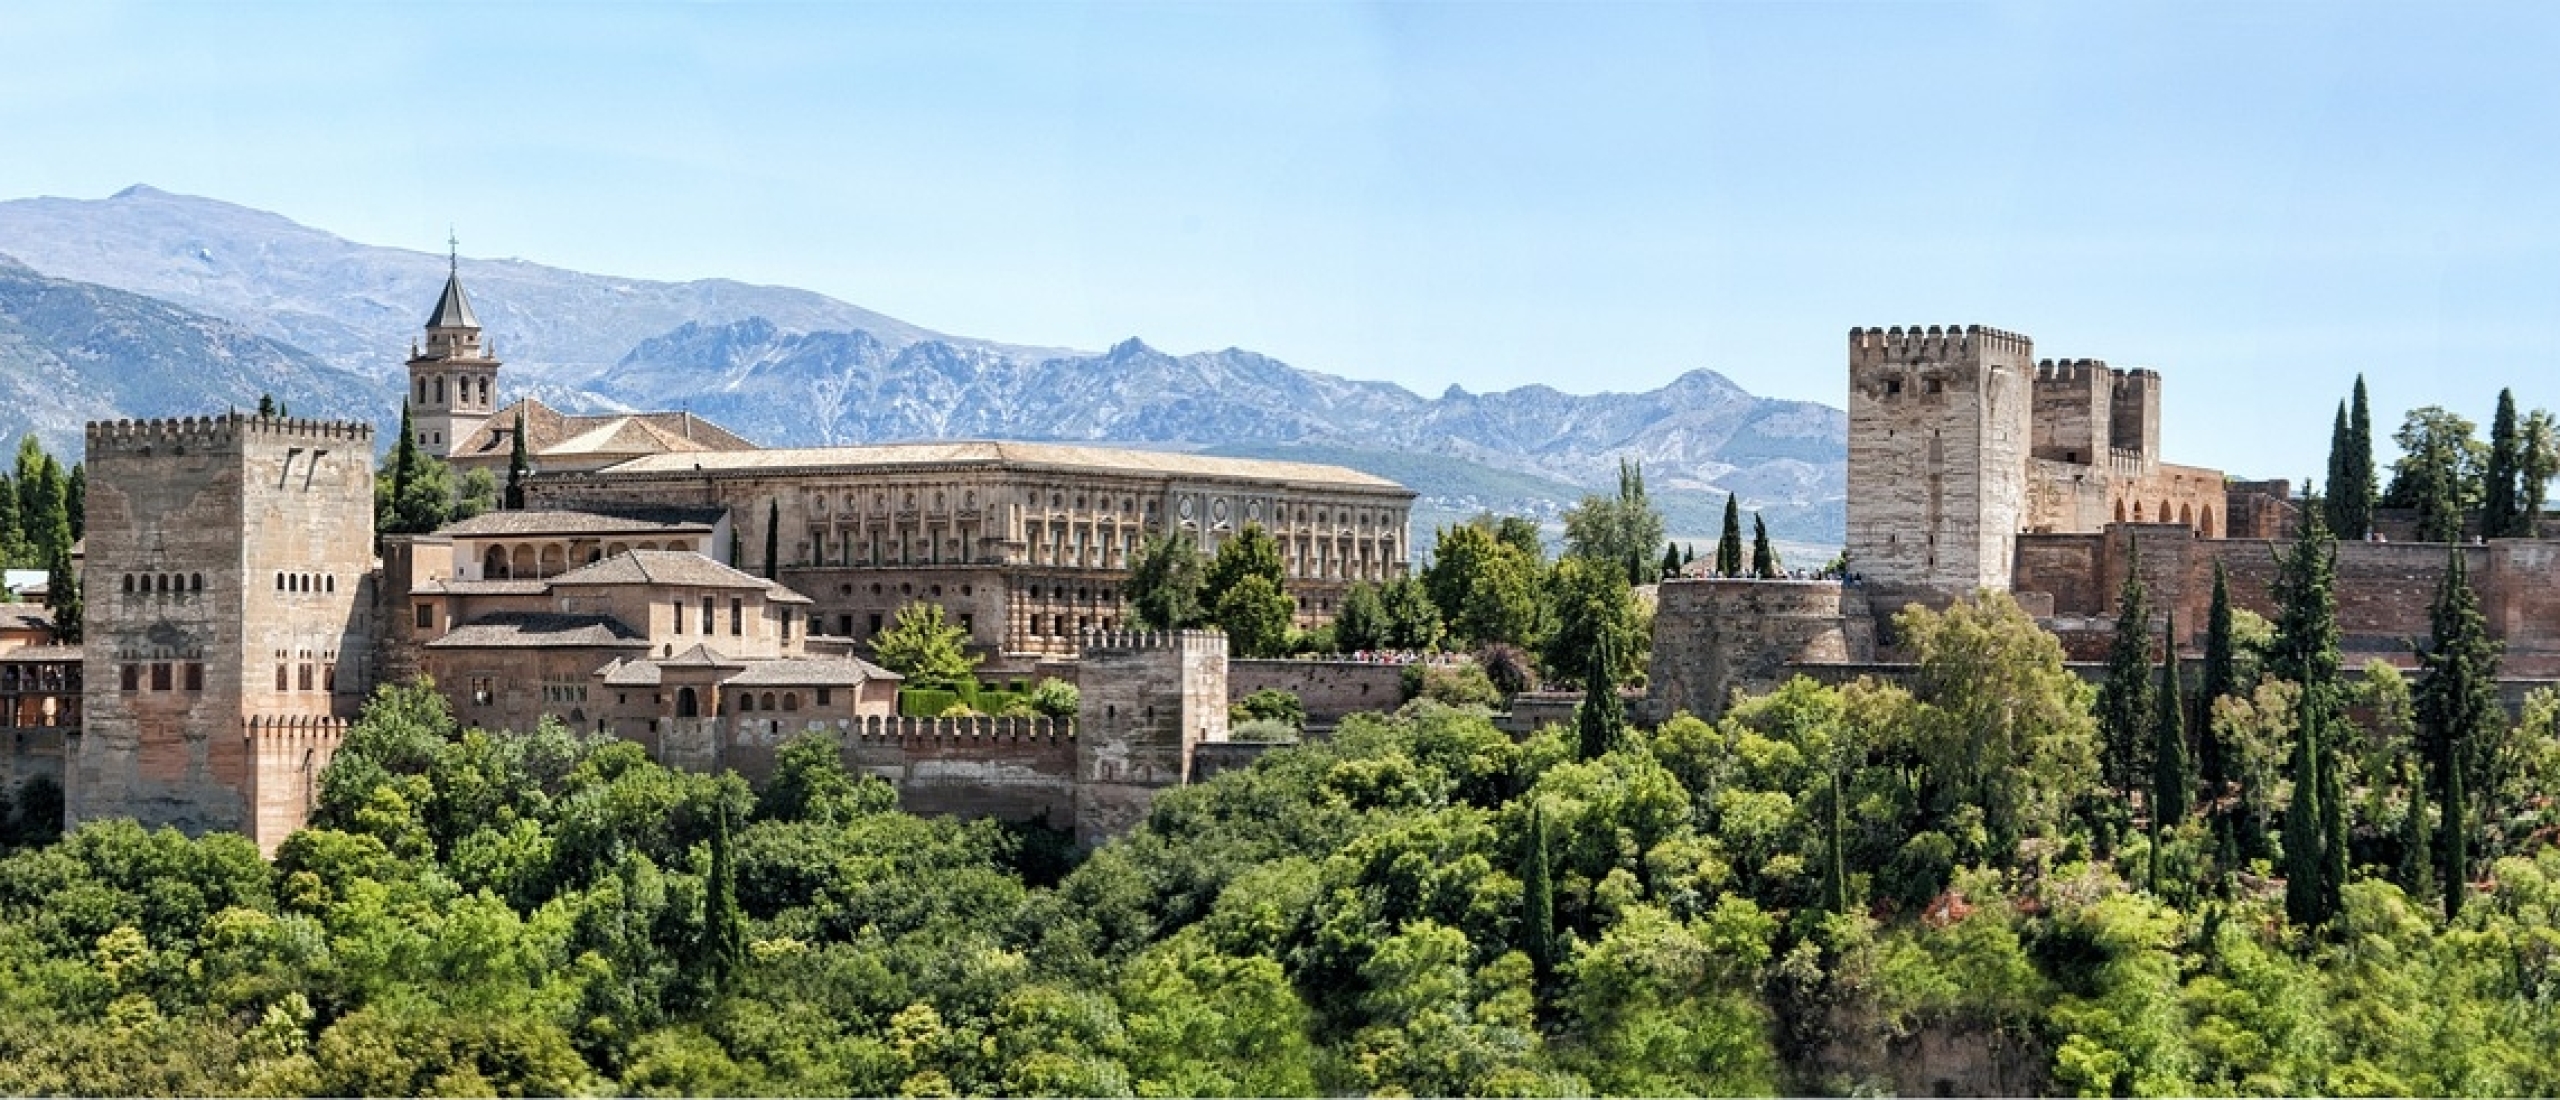 Alhambra in Granada Spanje bezoeken? Dit moet je écht weten | WeezeAirport.nl